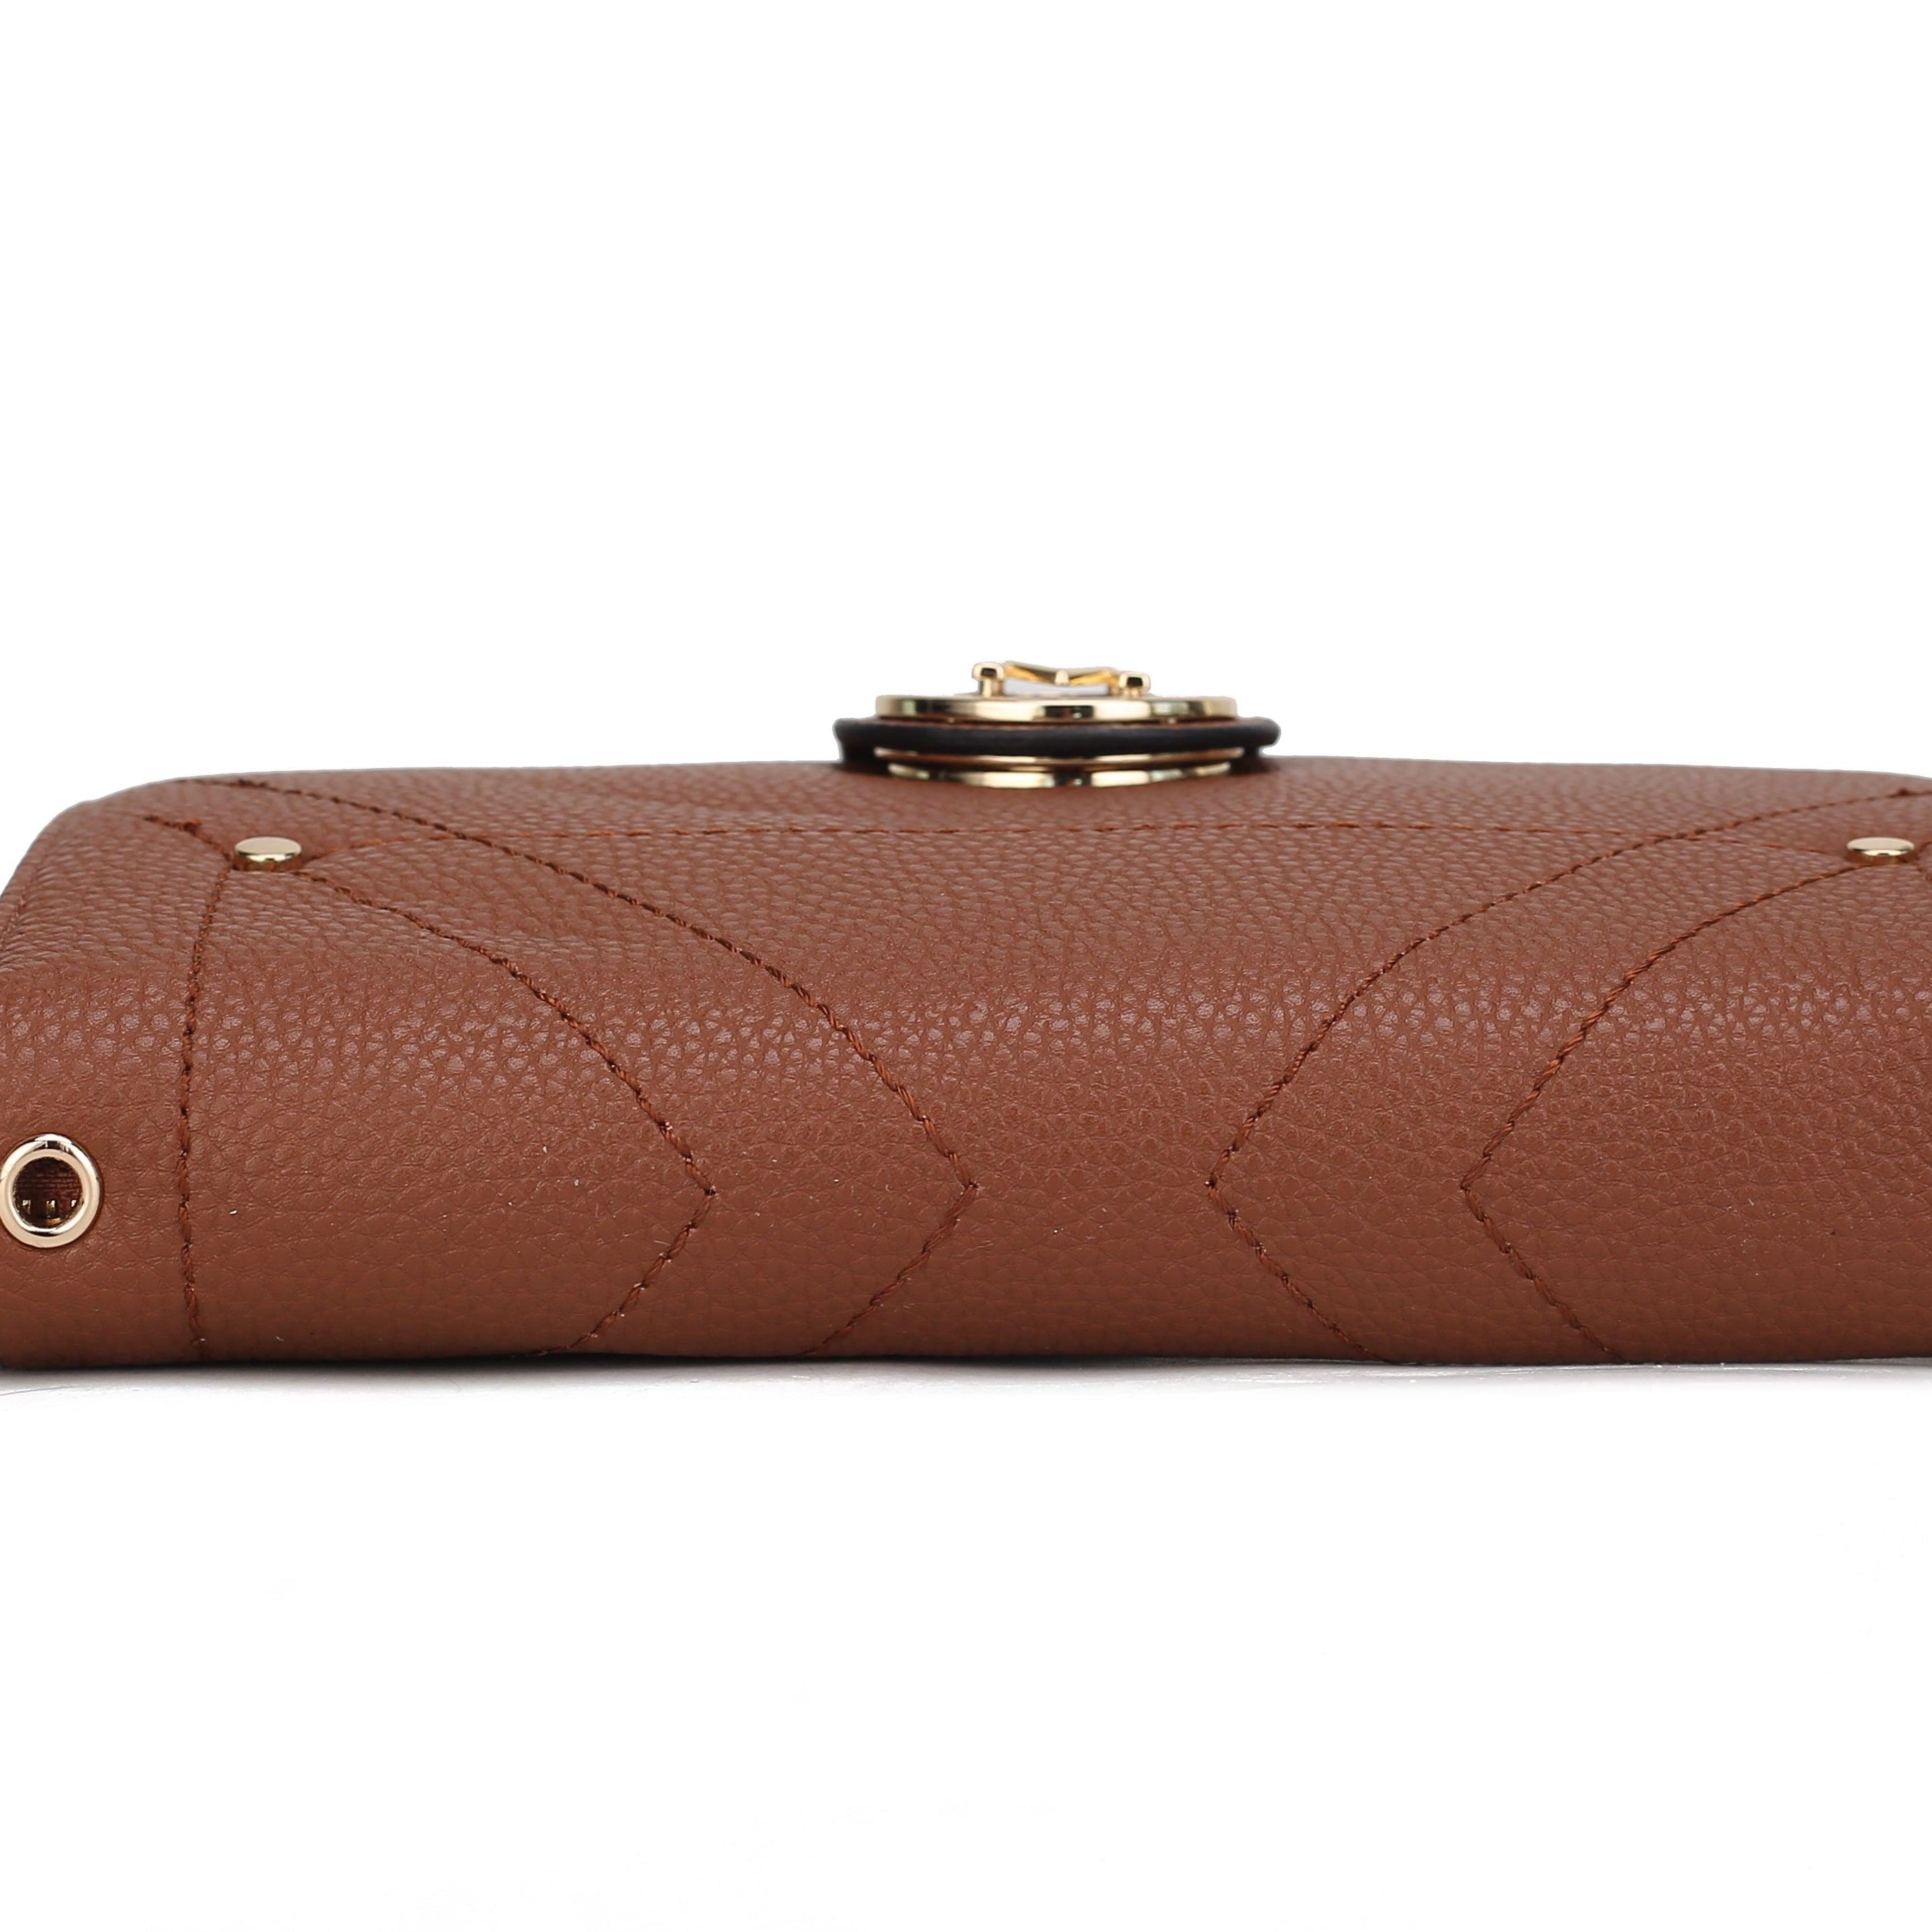 Wallets, Handbags & Accessories Sage Smartphone Wallet Convertible Crossbody Bag